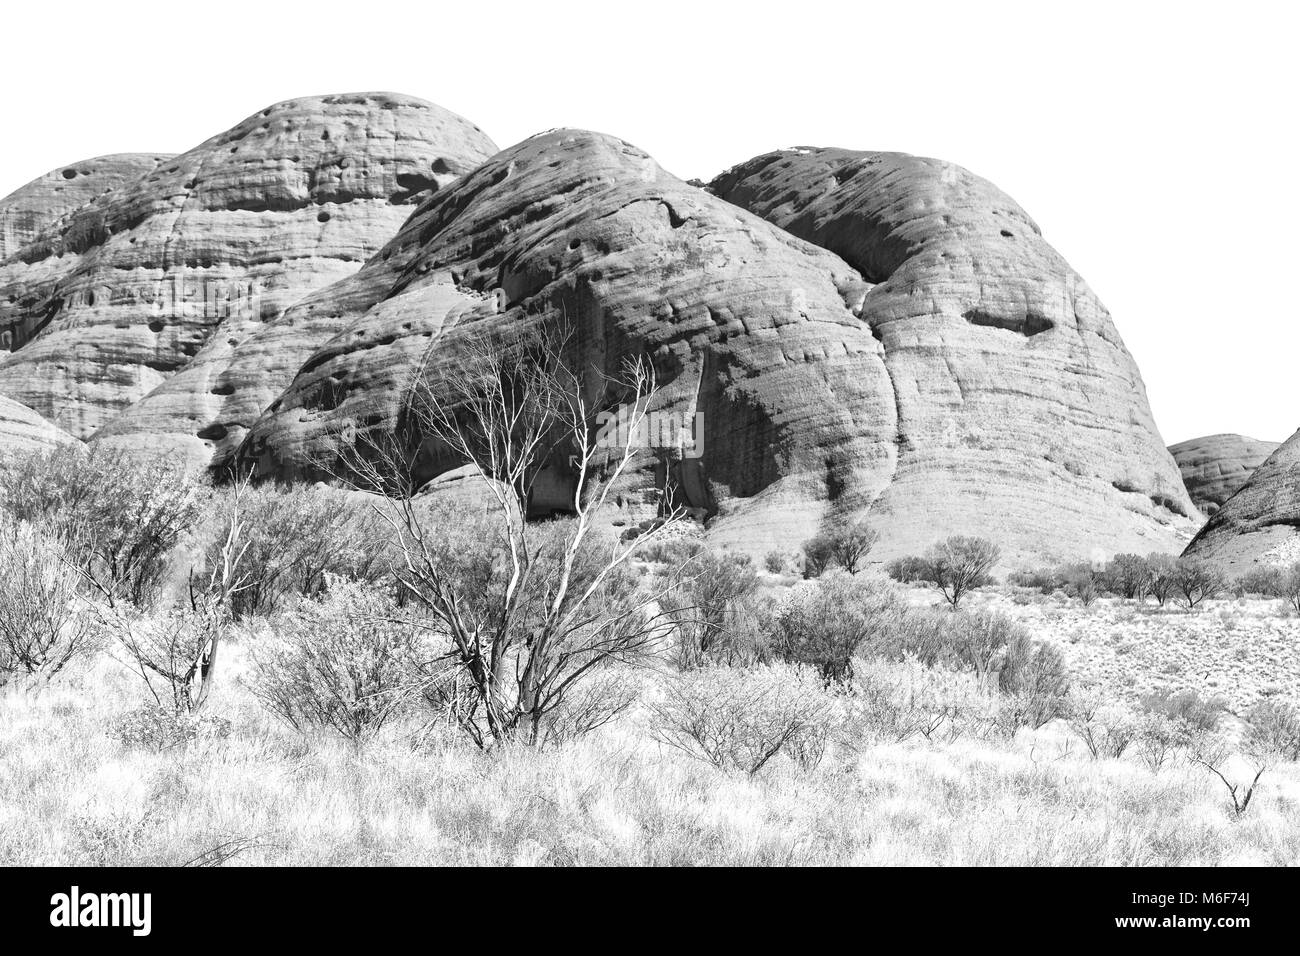 En Australie, l'outback canyon et l'arbre près de mountain dans la nature Banque D'Images